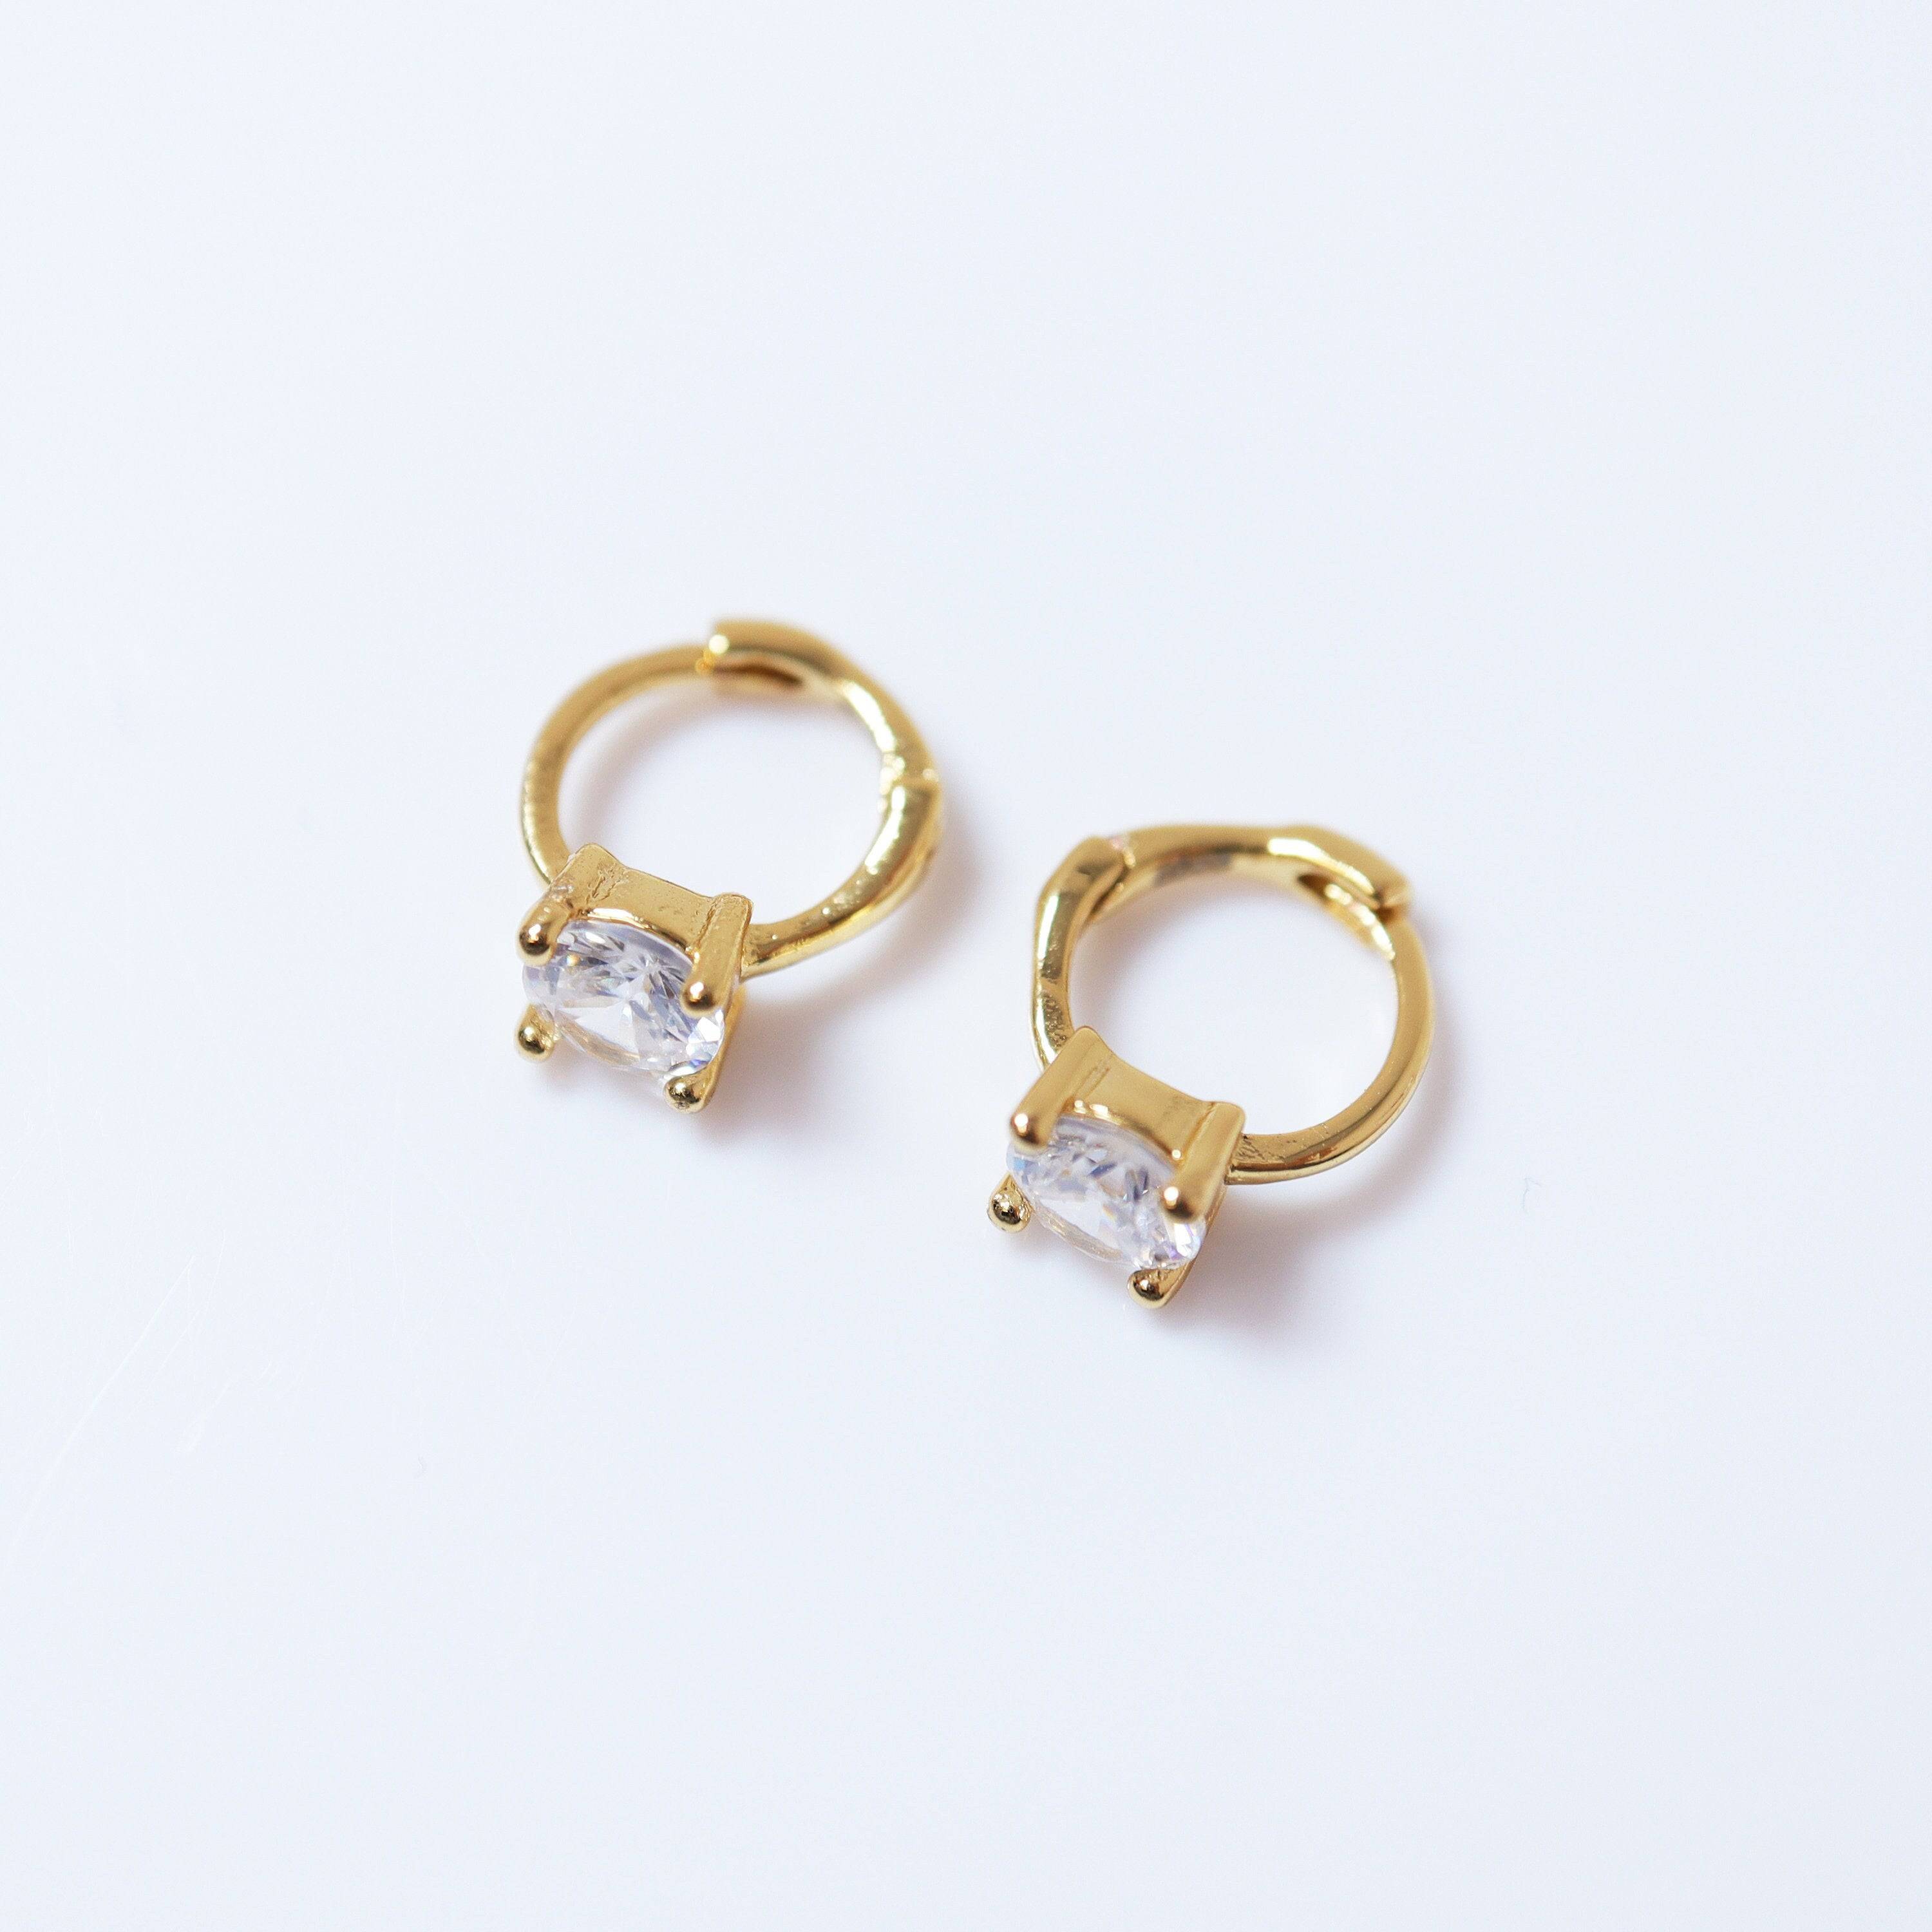 6mm Pearl Screw Back Earrings for Girls in 14K Gold | Jewelry Vine